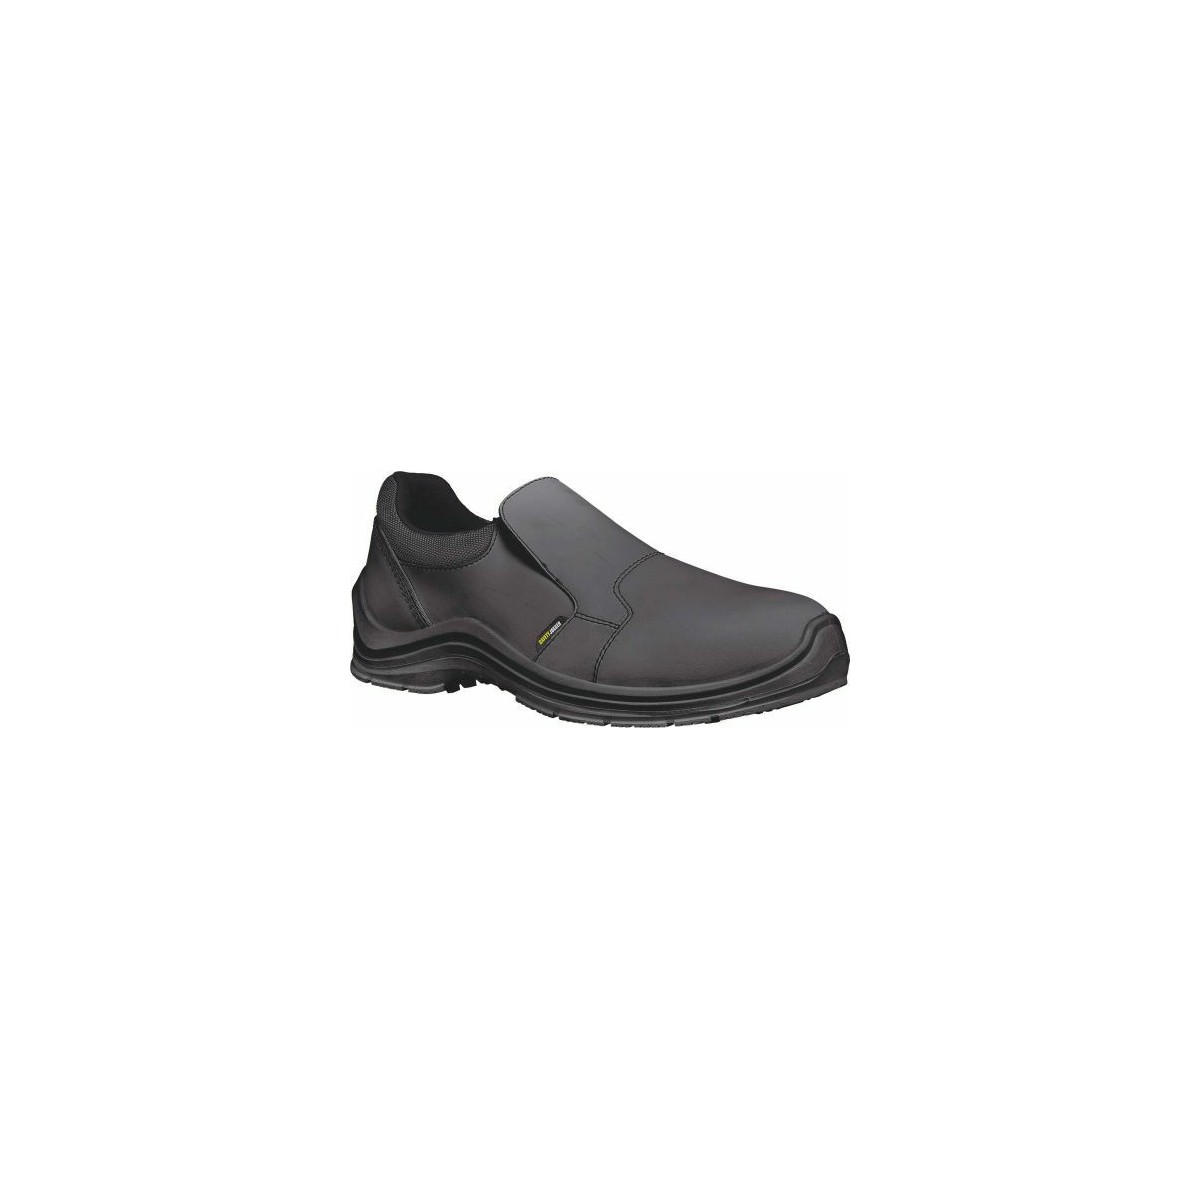 Chaussures de Sécurité Noir DOLCE 81 - SHOES FOR CREWS